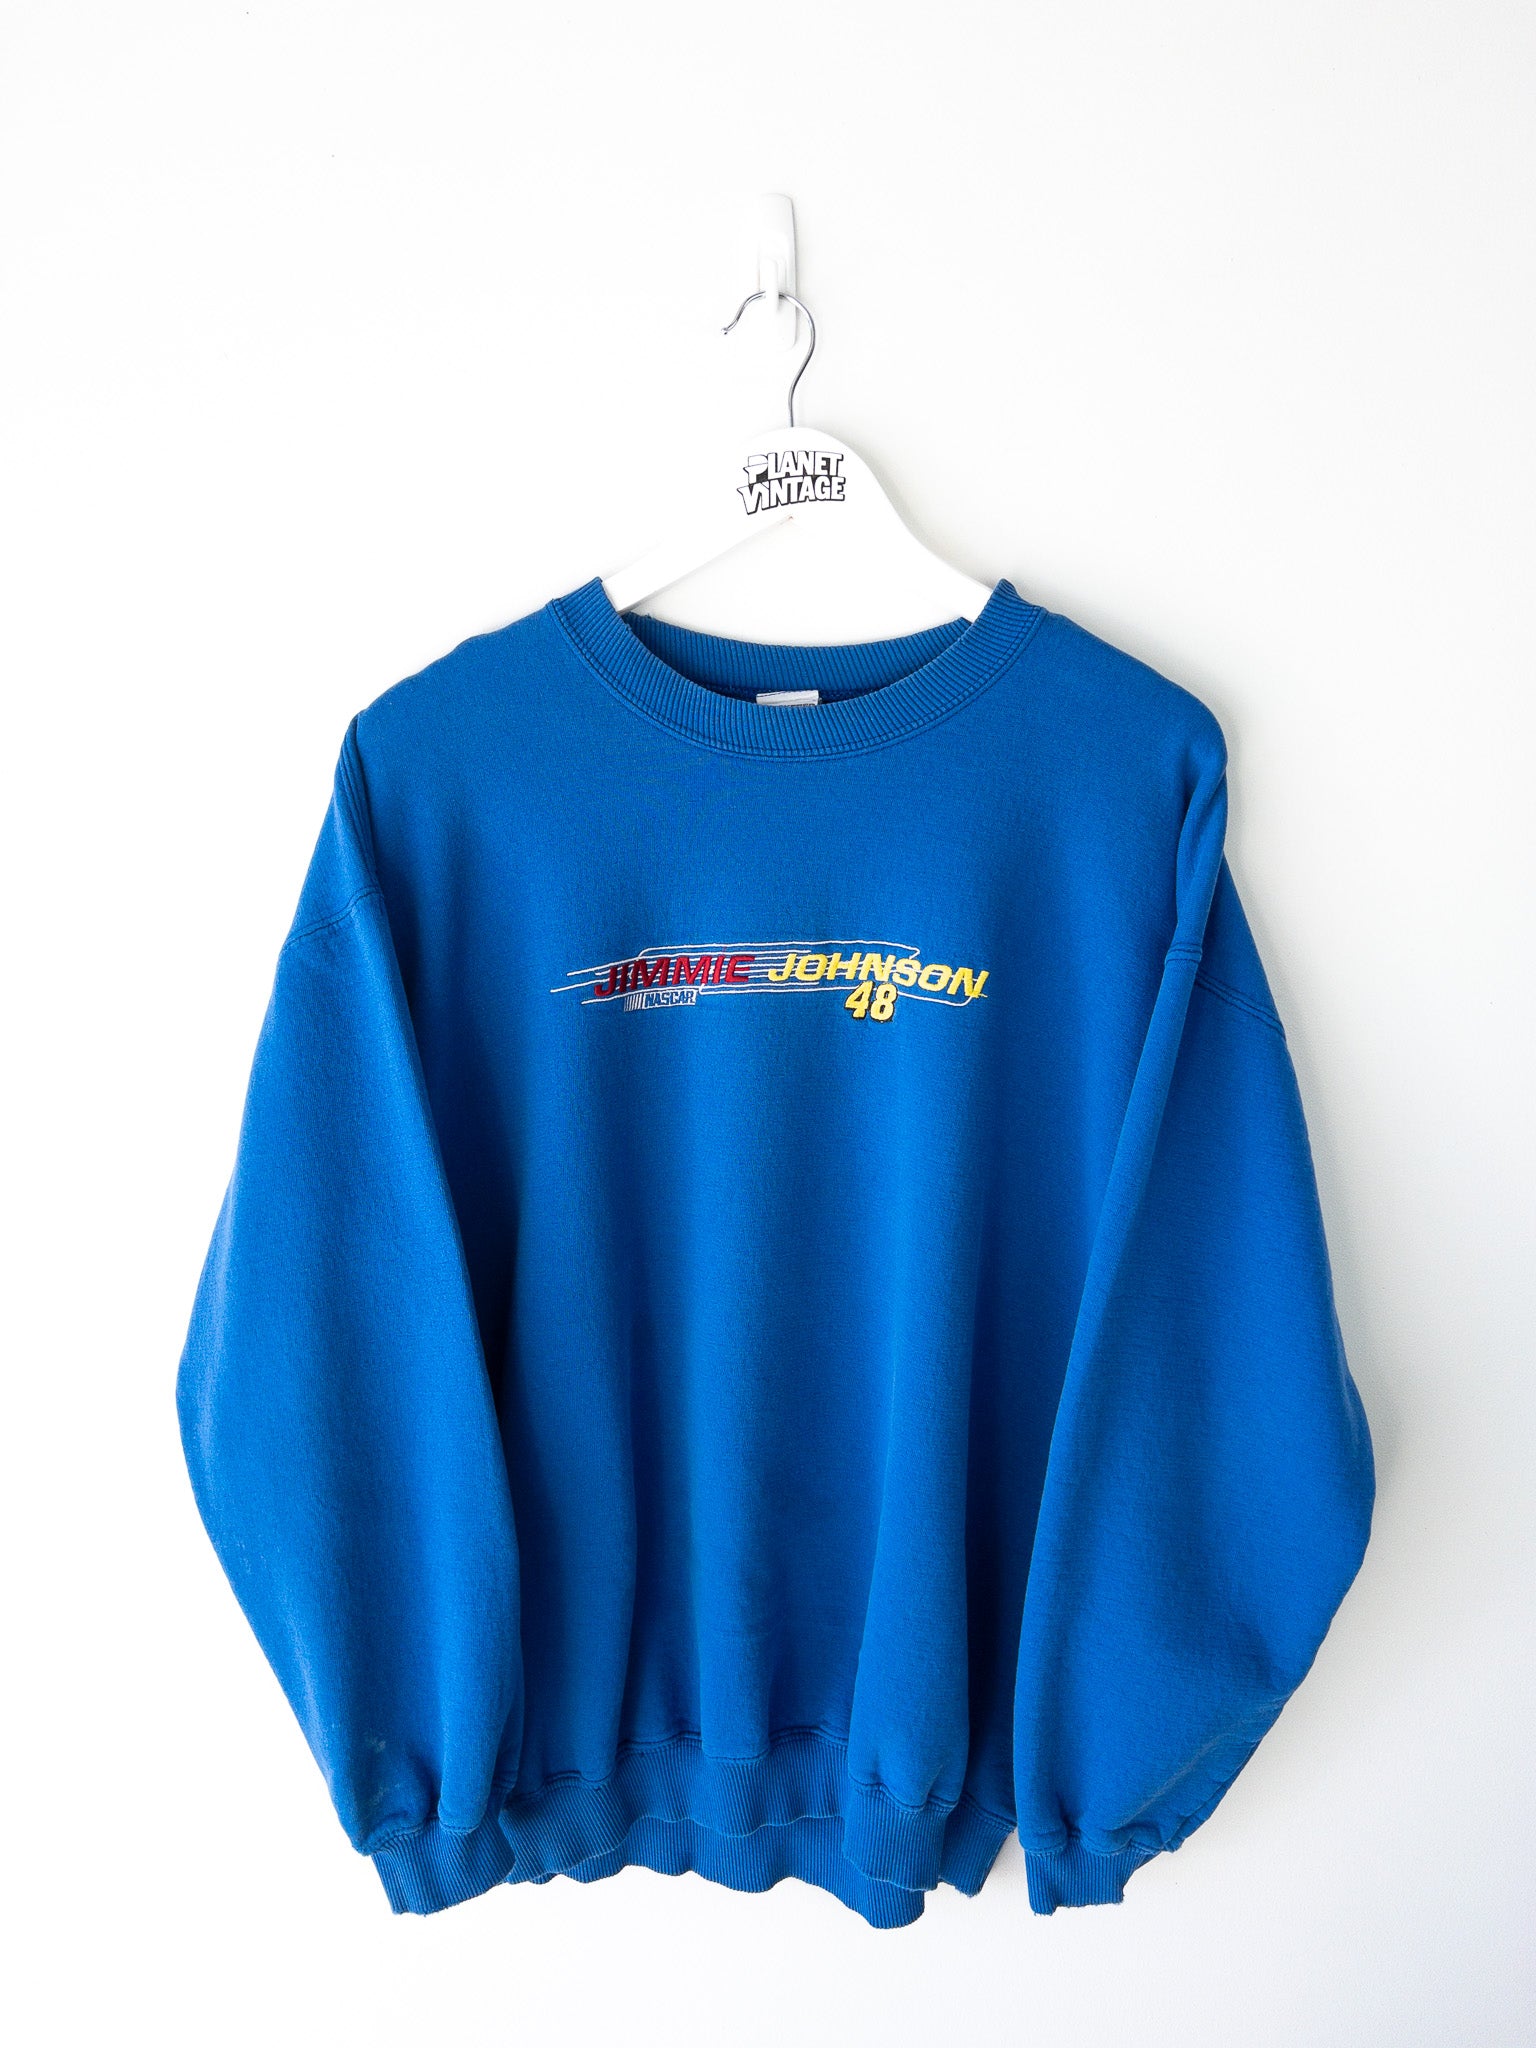 Vintage Jimmie Johnson Sweatshirt (L)